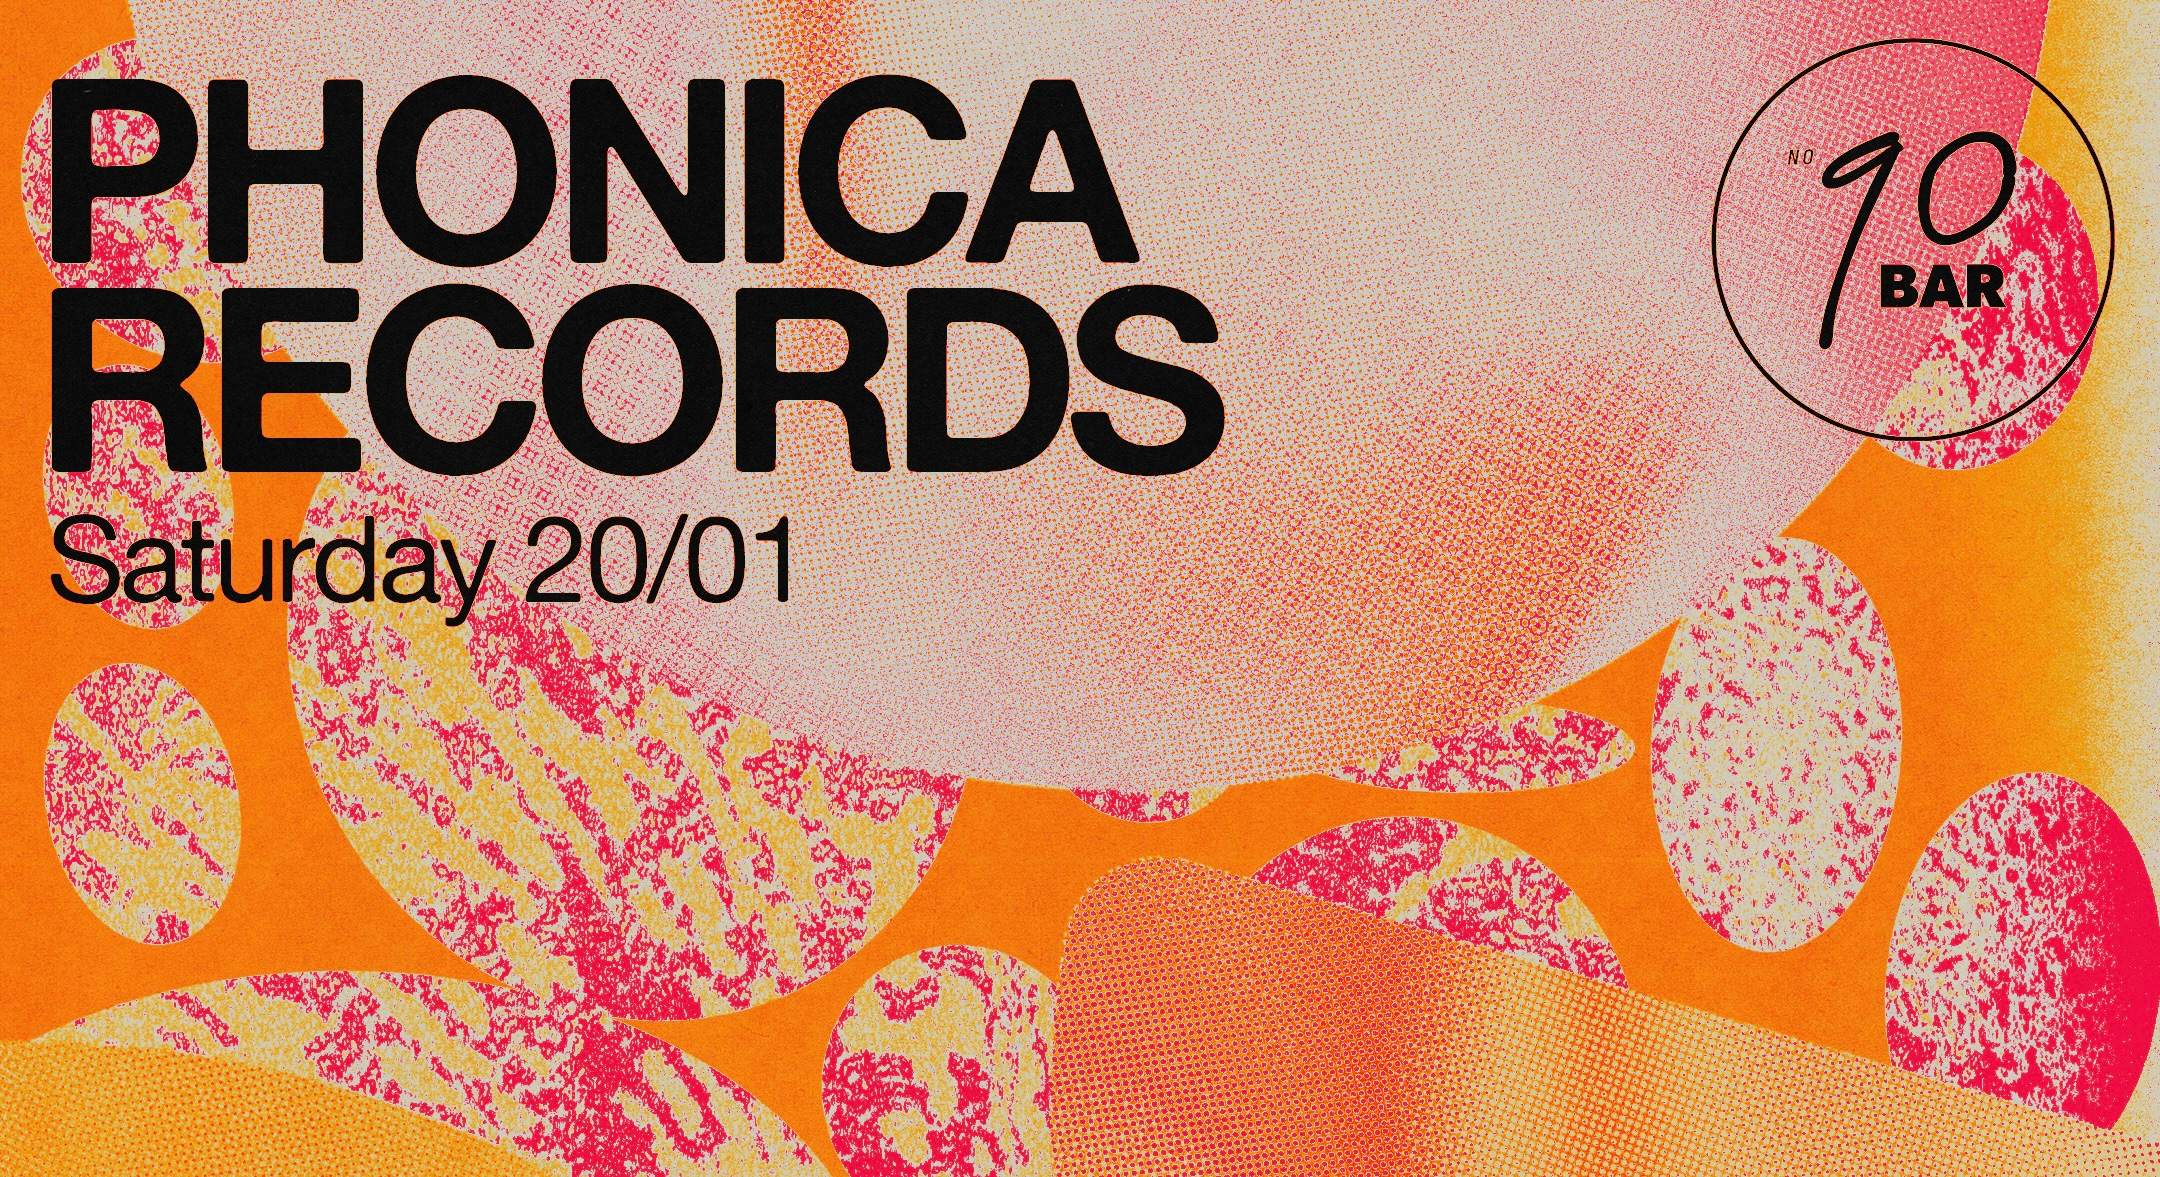 No90 Bar presents: Phonica Records - Página frontal